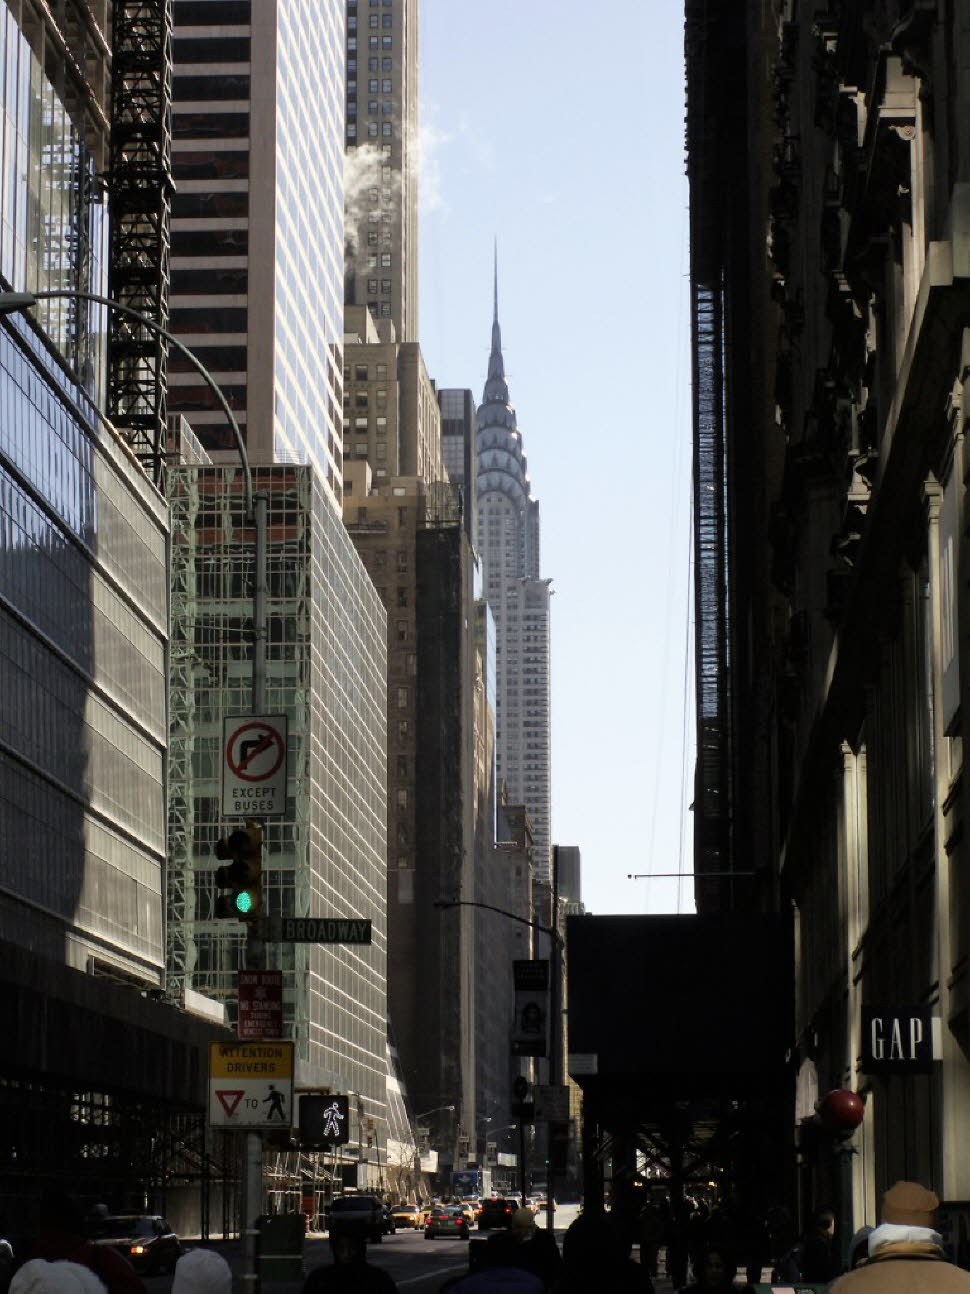 Das Chrysler Building zählt zu den Wahrzeichen der Metropole. Das Chrysler Building zählt mit seiner silber glänzenden Spitze und den darunter liegenden Edelstahlbögen aus der Art-déco-Zeit zu den bekanntesten Hochhäusern der Welt. Es steht im Ruf, dass eR